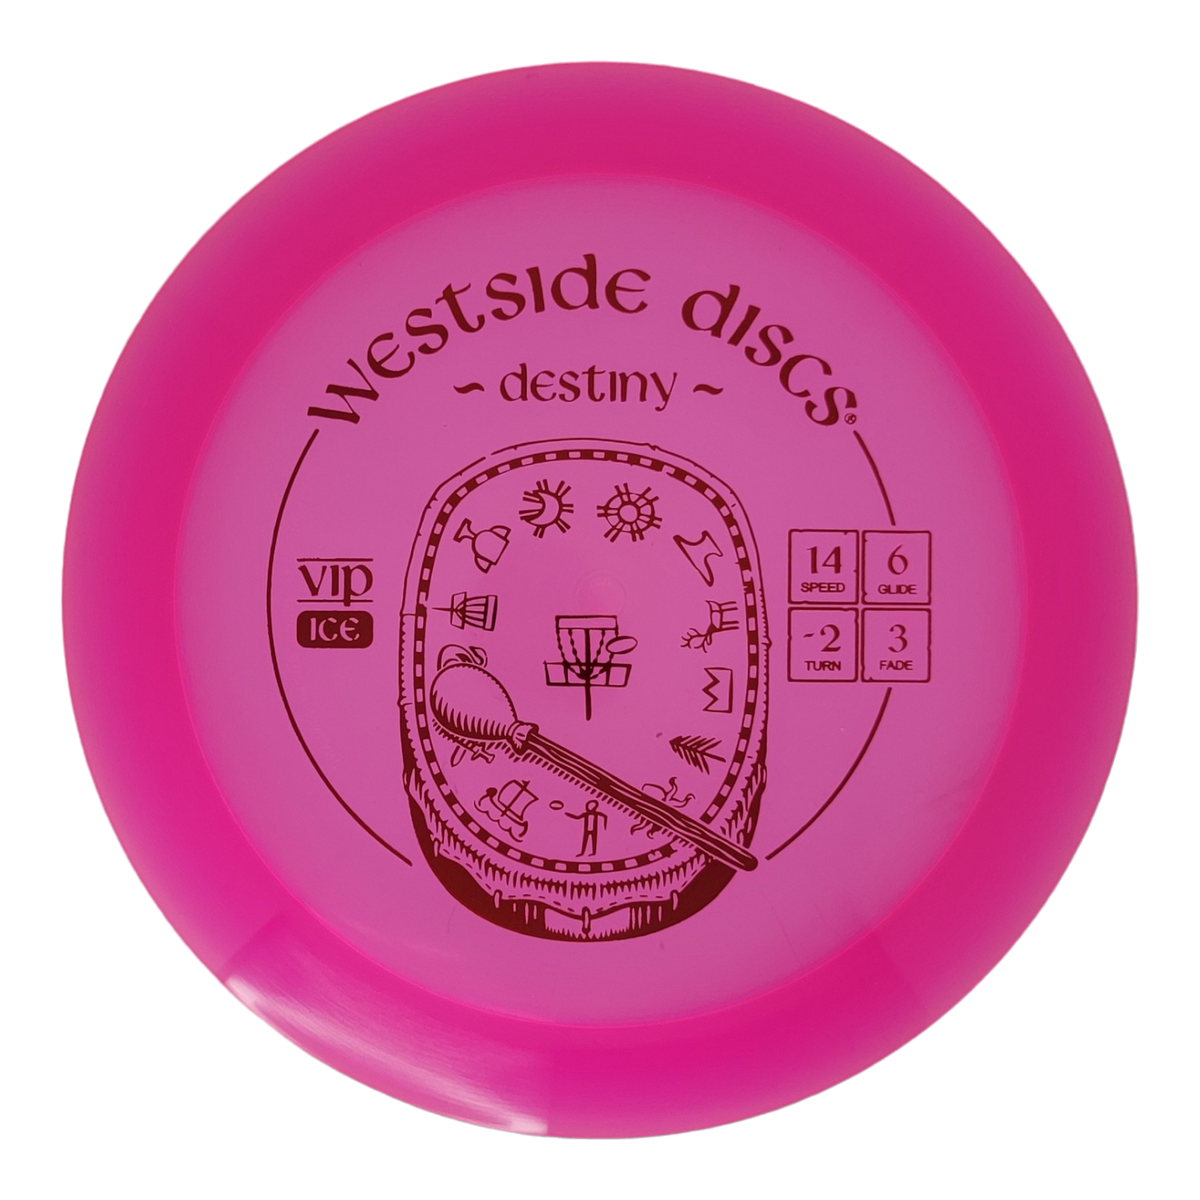 Westside Discs VIP Ice Destiny